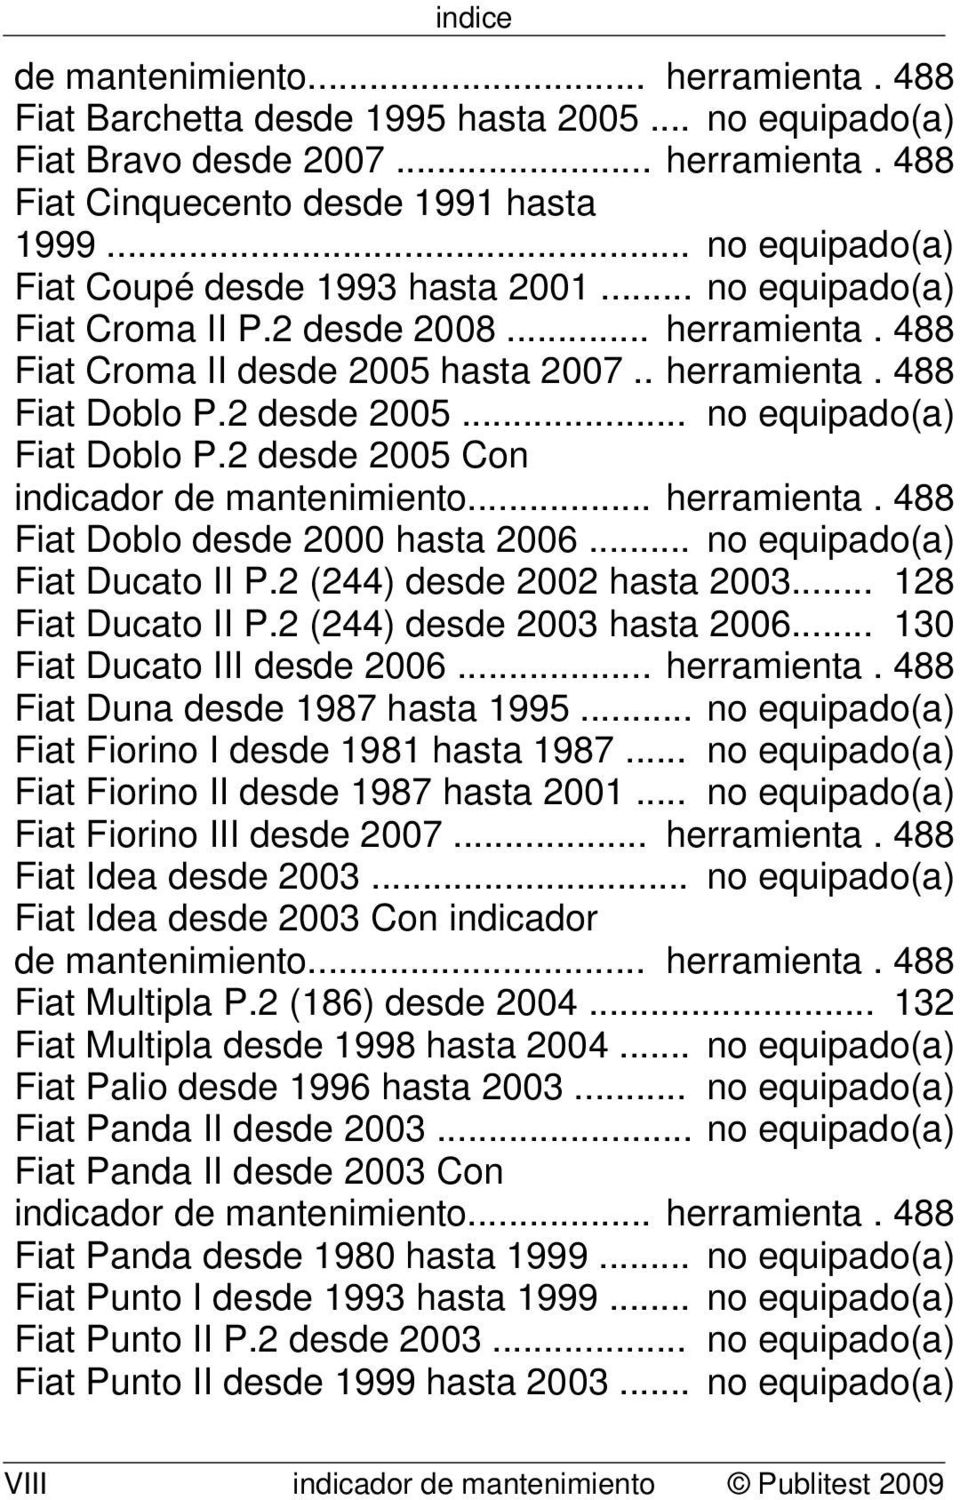 .. no equipado(a) Fiat Doblo P.2 desde 2005 Con indicador de mantenimiento... herramienta. 488 Fiat Doblo desde 2000 hasta 2006... no equipado(a) Fiat Ducato II P.2 (244) desde 2002 hasta 2003.